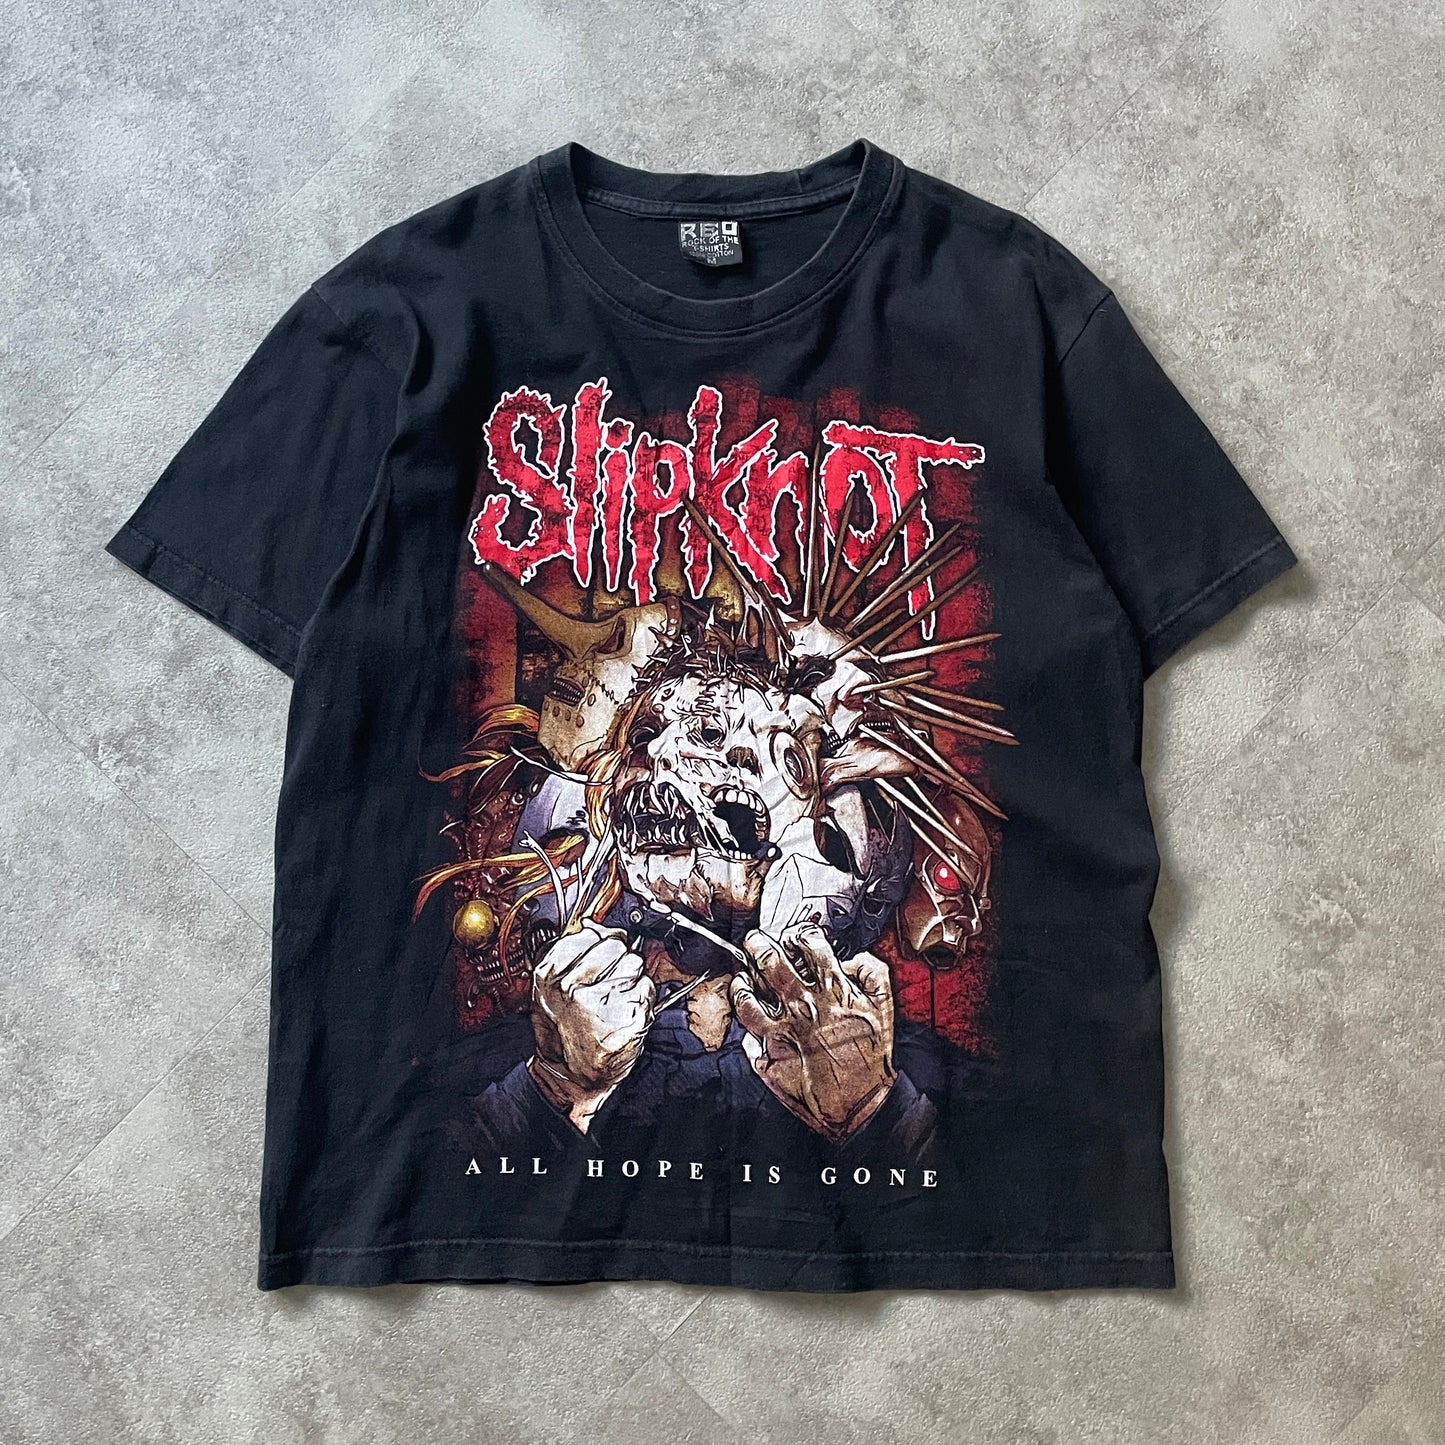 Slipknot Band Tee (Medium)